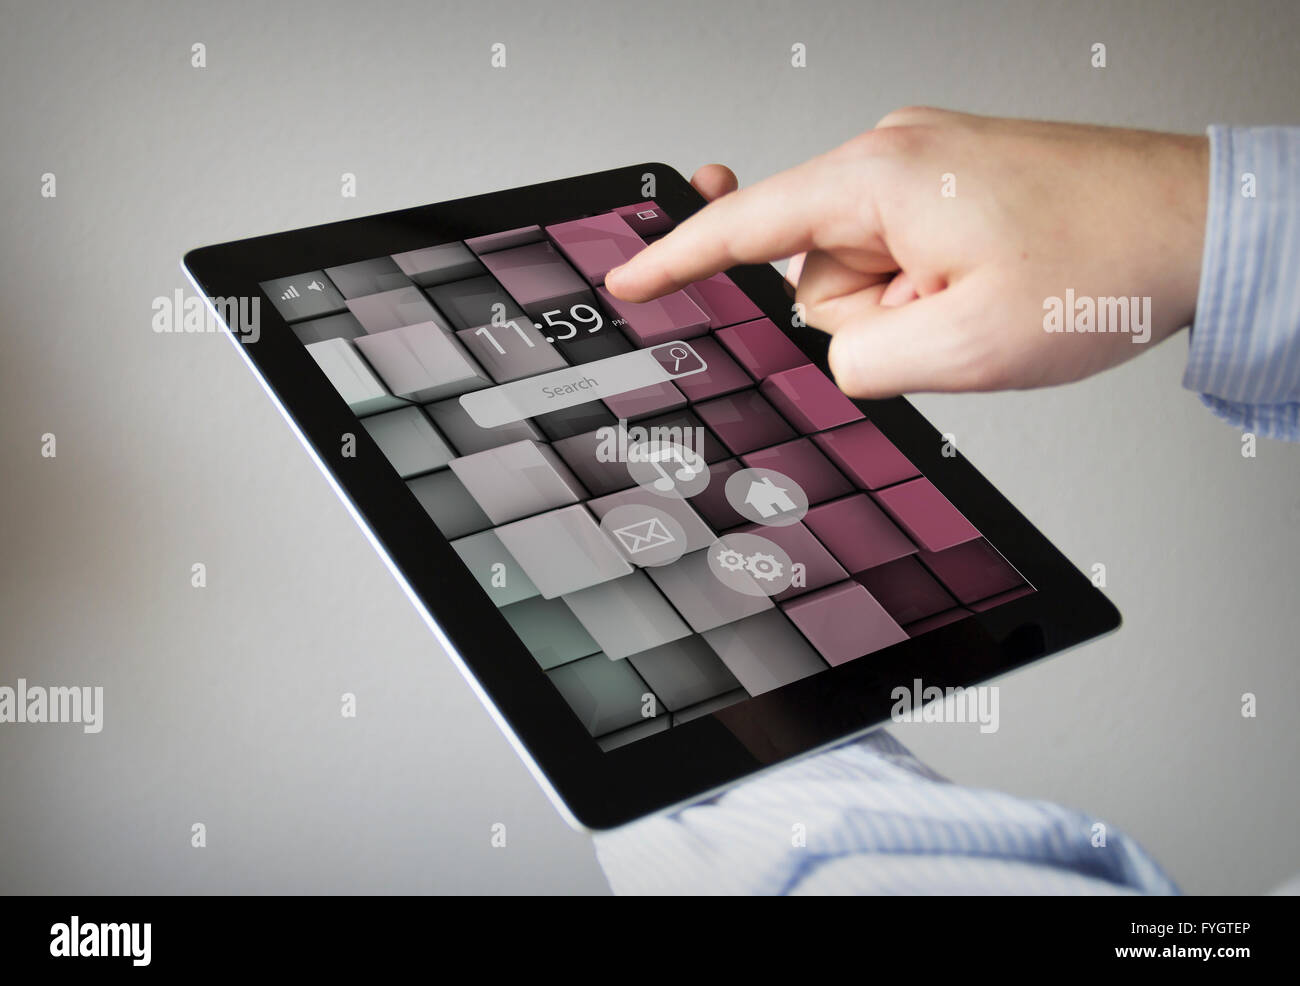 Concept d'interactivité : les mains à l'écran tactile Tablet device Banque D'Images